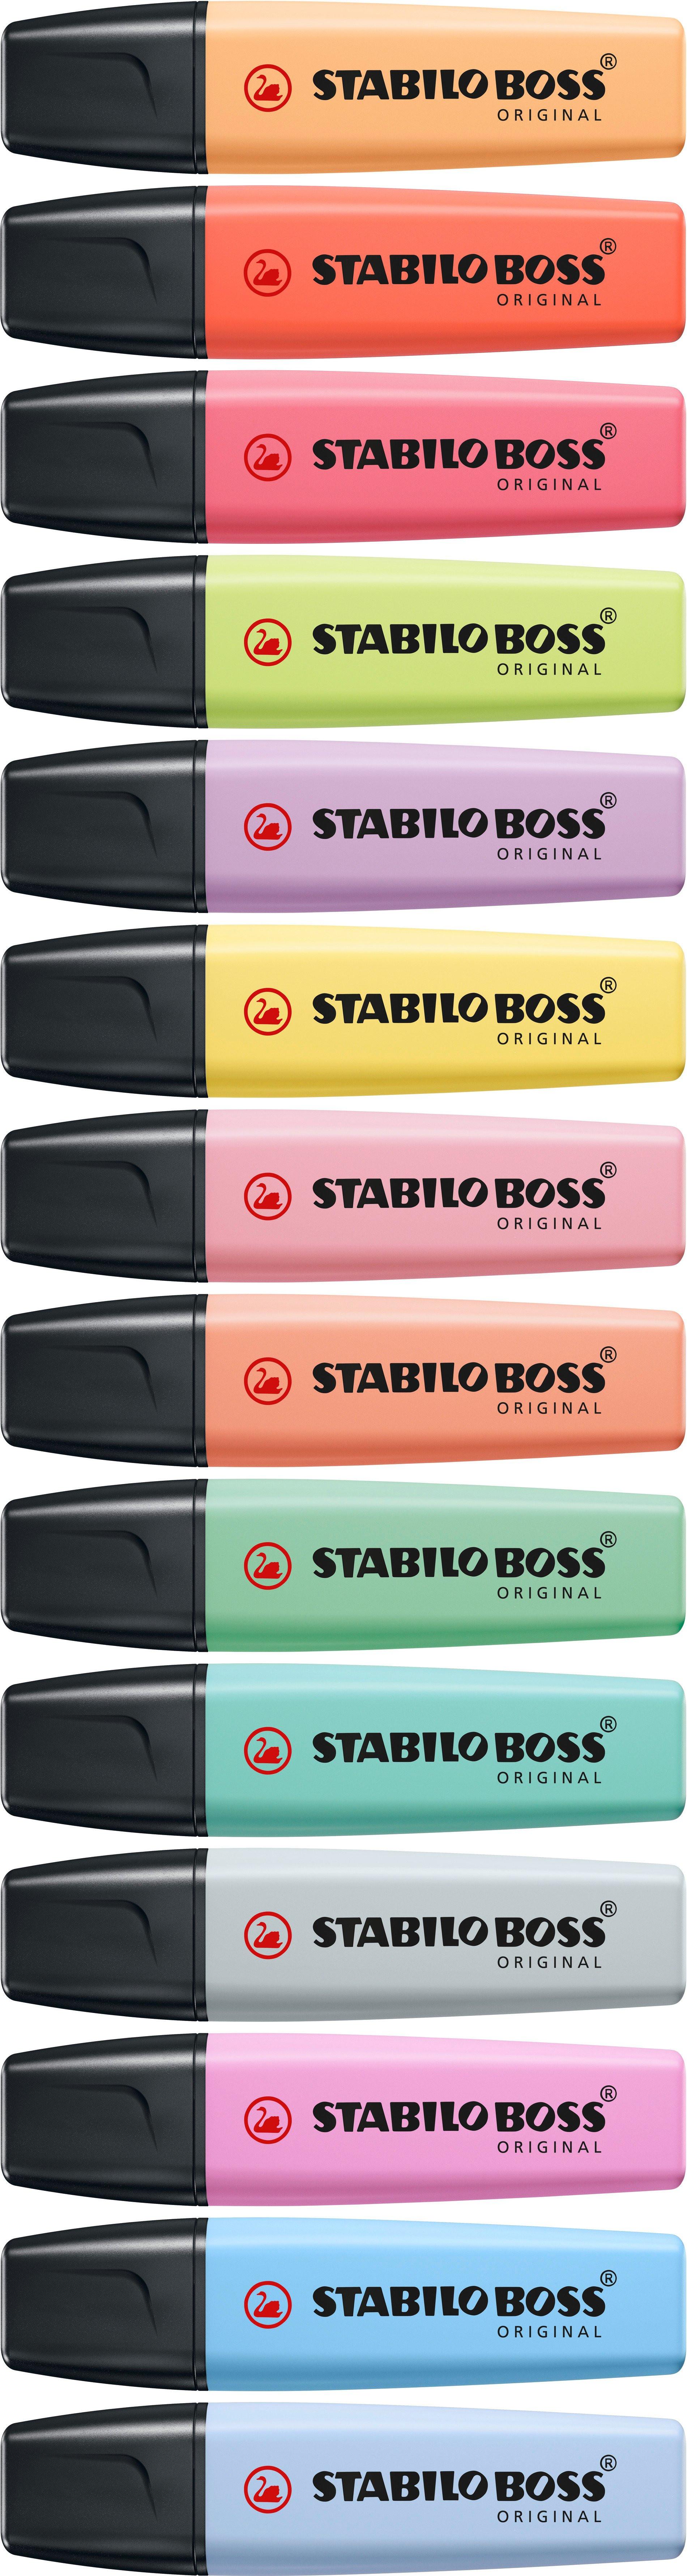 STABILO STABILO BOSS Pastell 2-5mm 70/112 himmelblau  